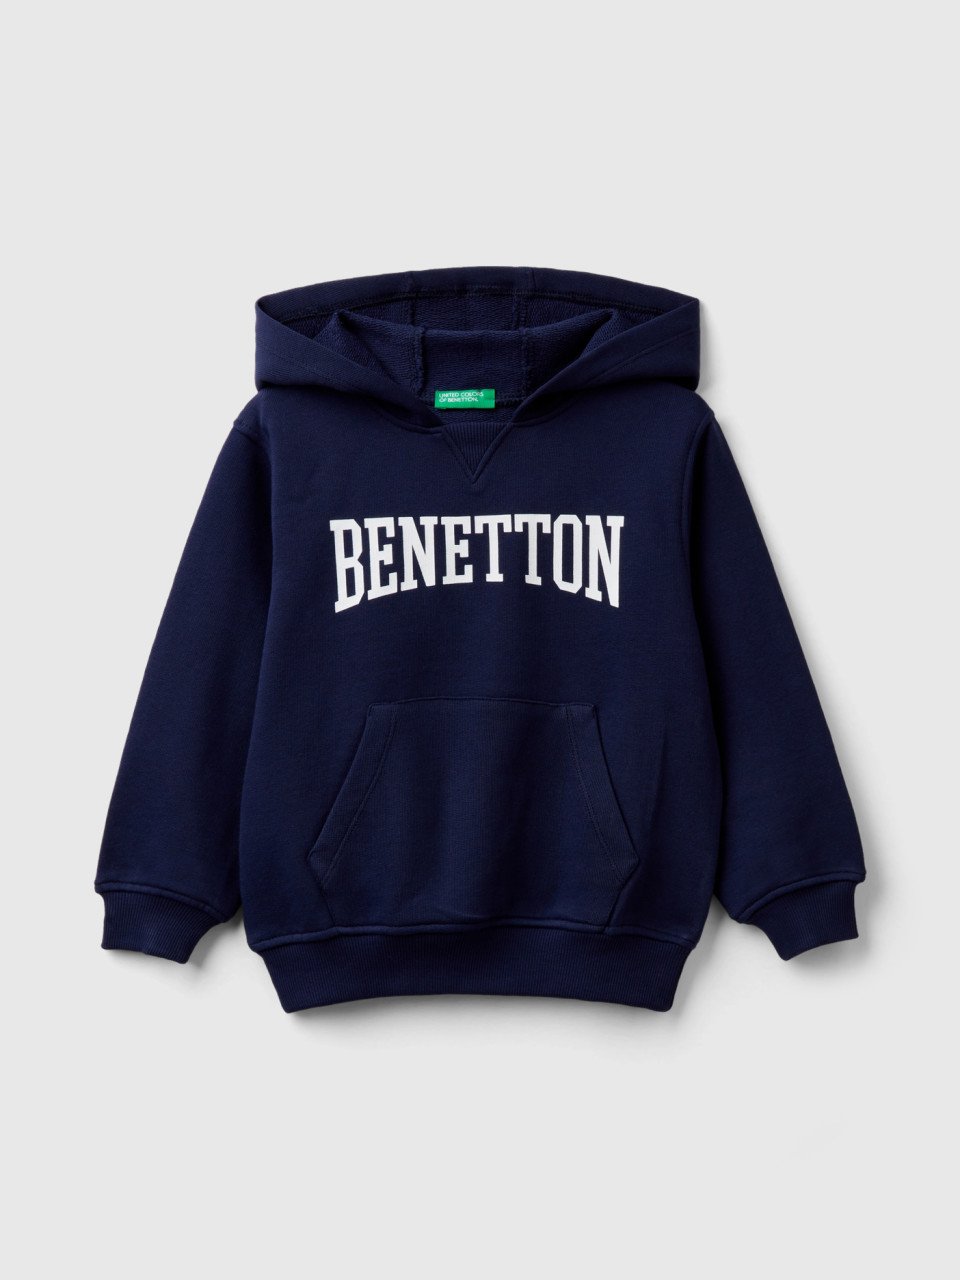 Benetton, Kapuzensweater Aus 100% Baumwolle, Dunkelblau, male